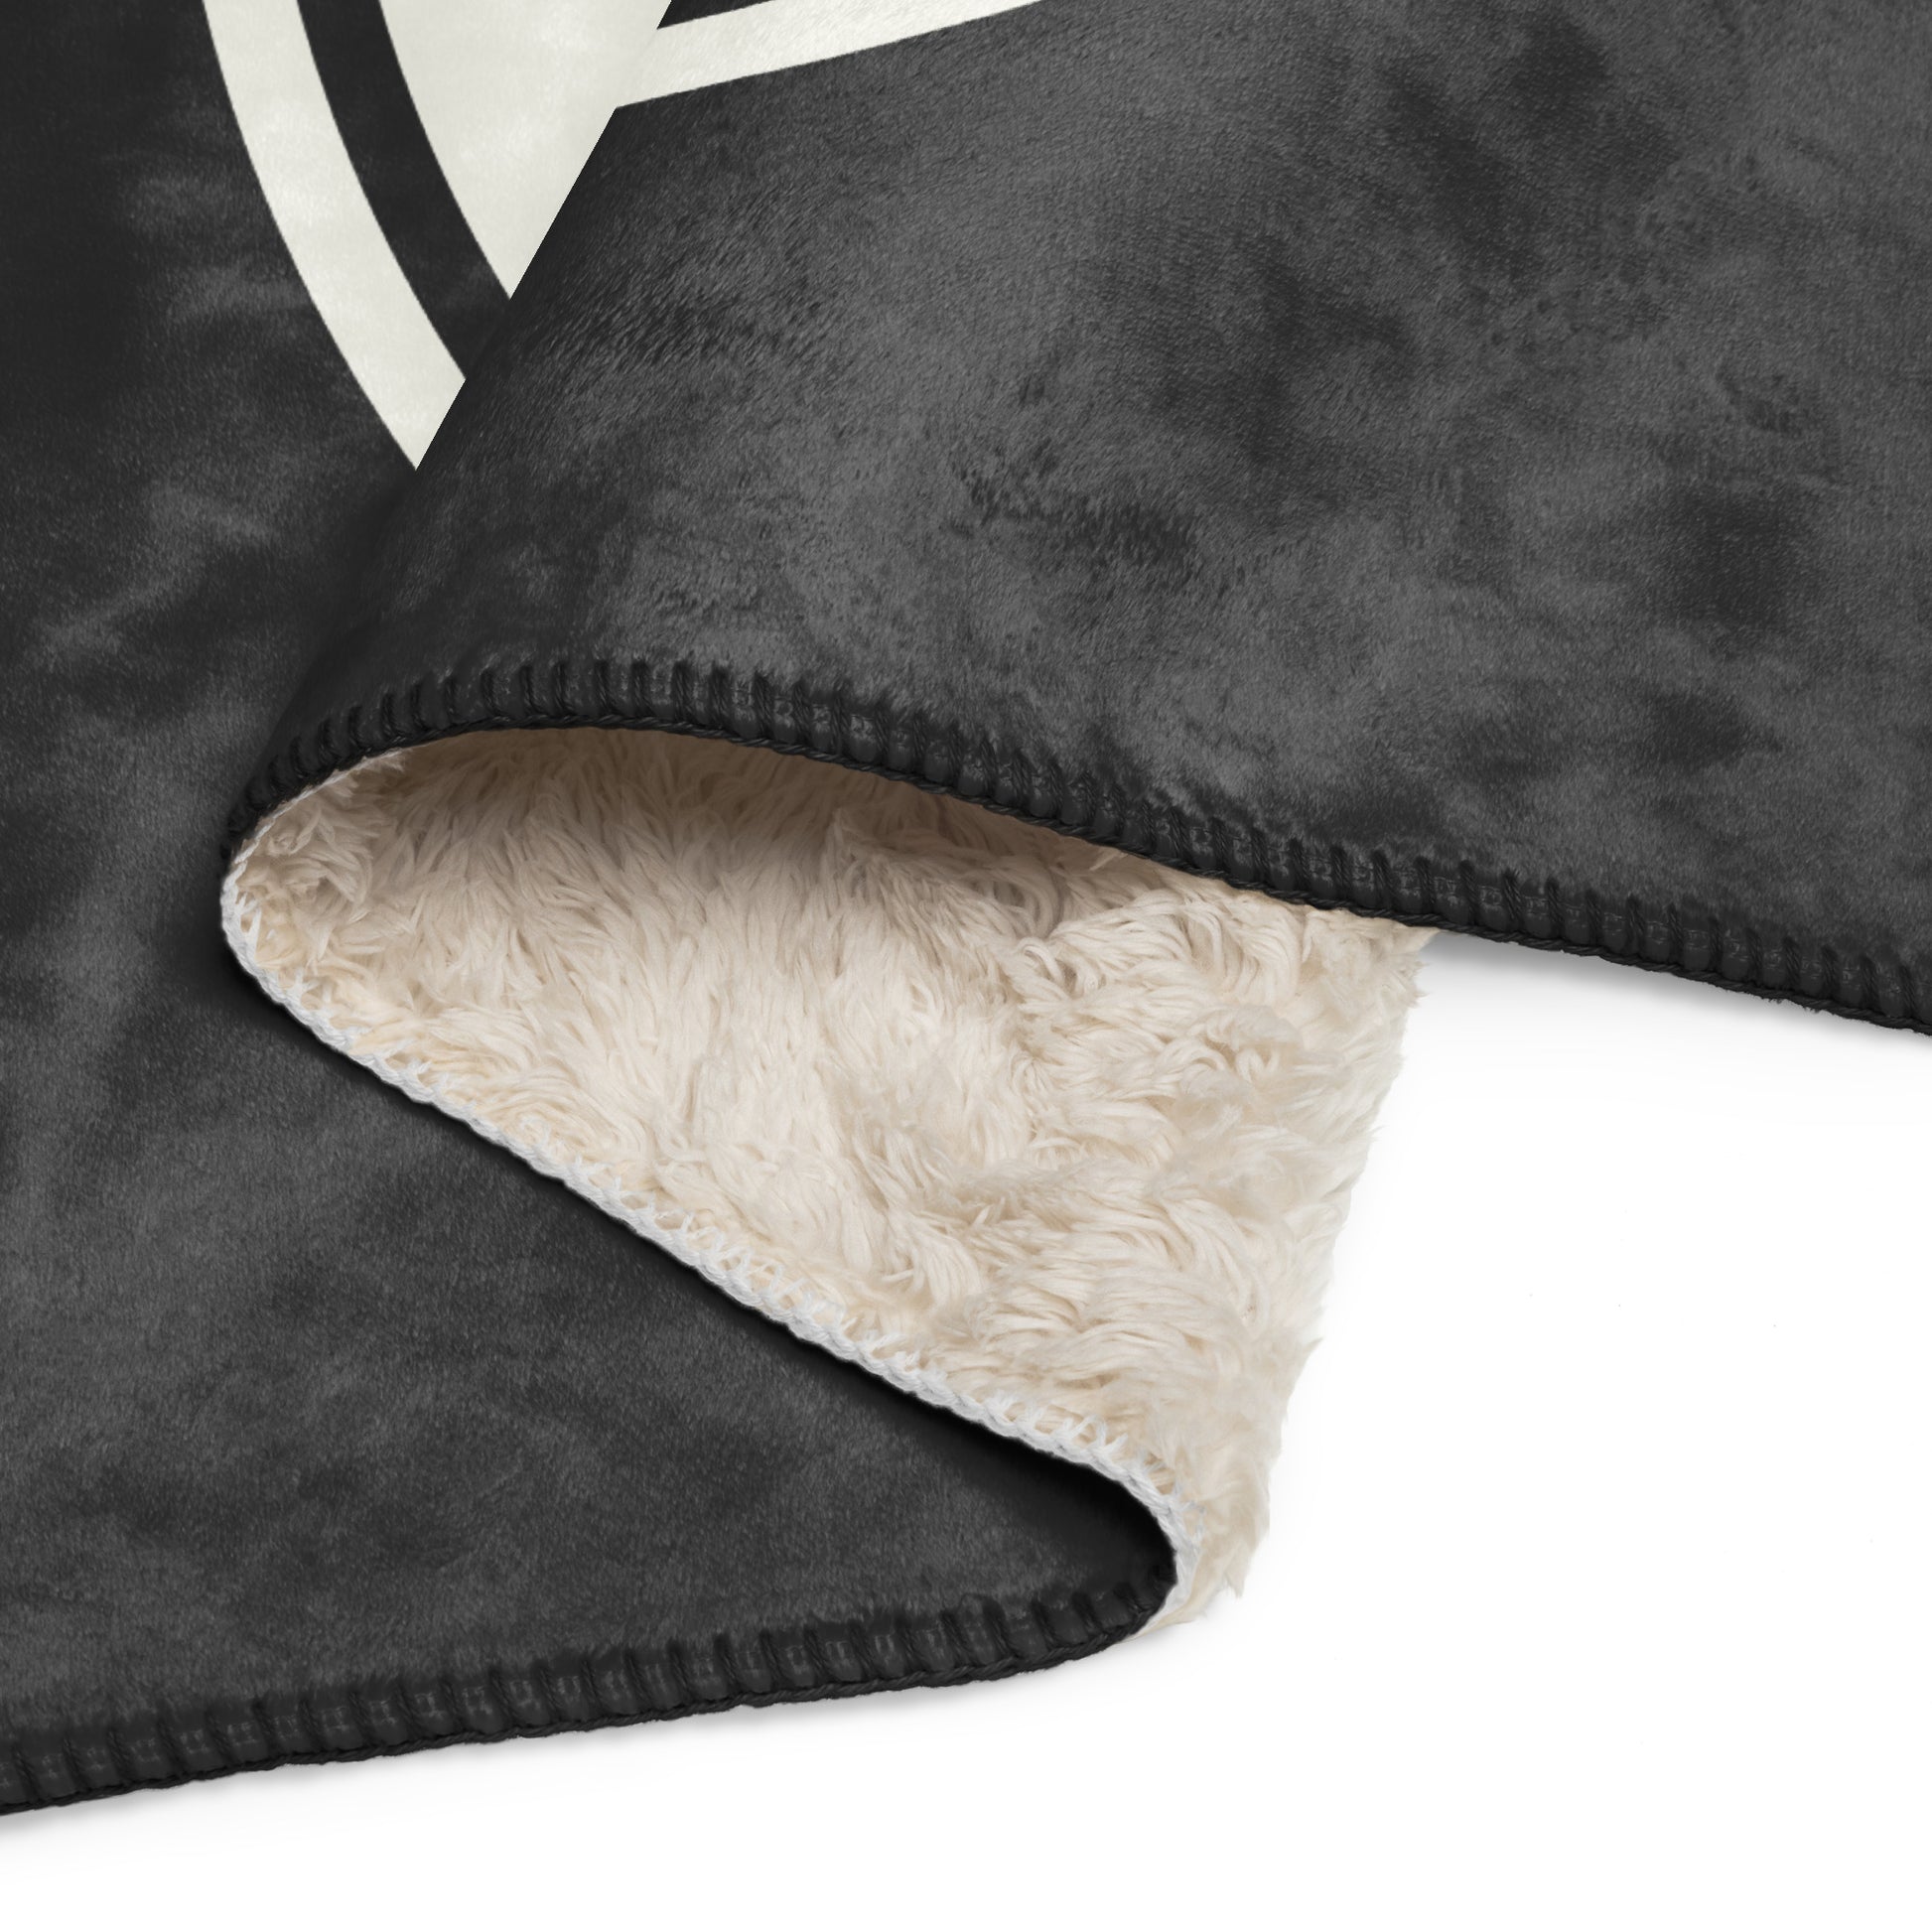 Unique Travel Gift Sherpa Blanket - White Oval • KEF Reykjavik • YHM Designs - Image 08